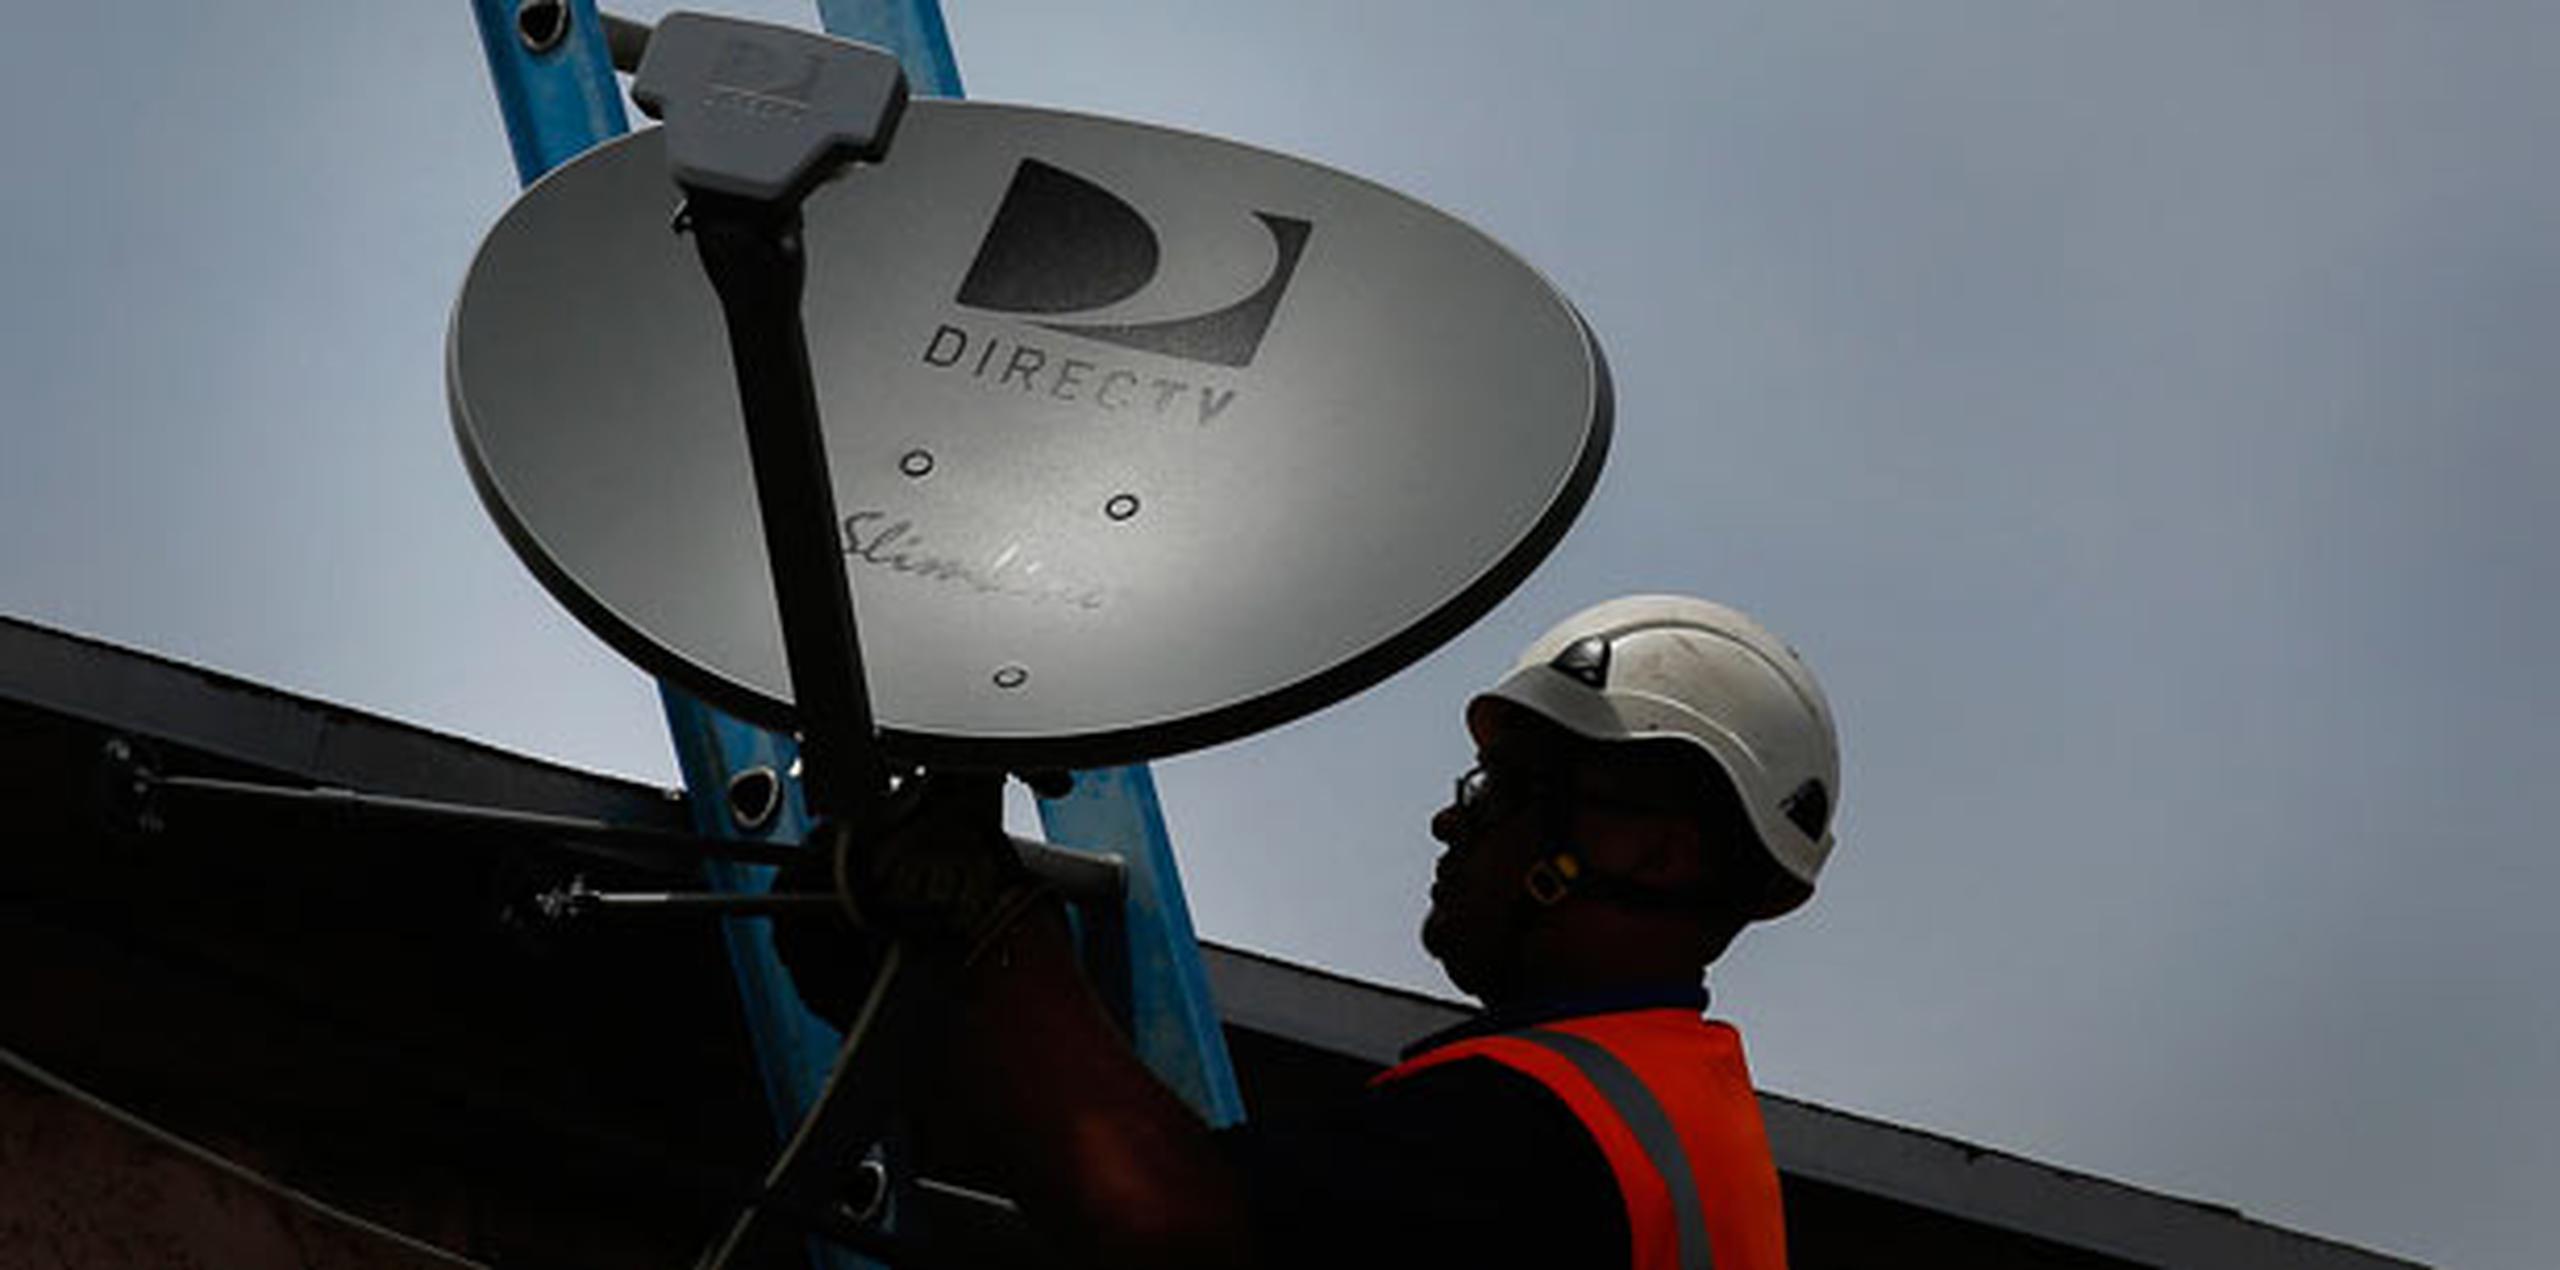 El nuevo gigante superará en número de clientes a Comcast así como a Charter, que busca la autorización del gobierno para comprar Time Warner Cable. (Archivo)